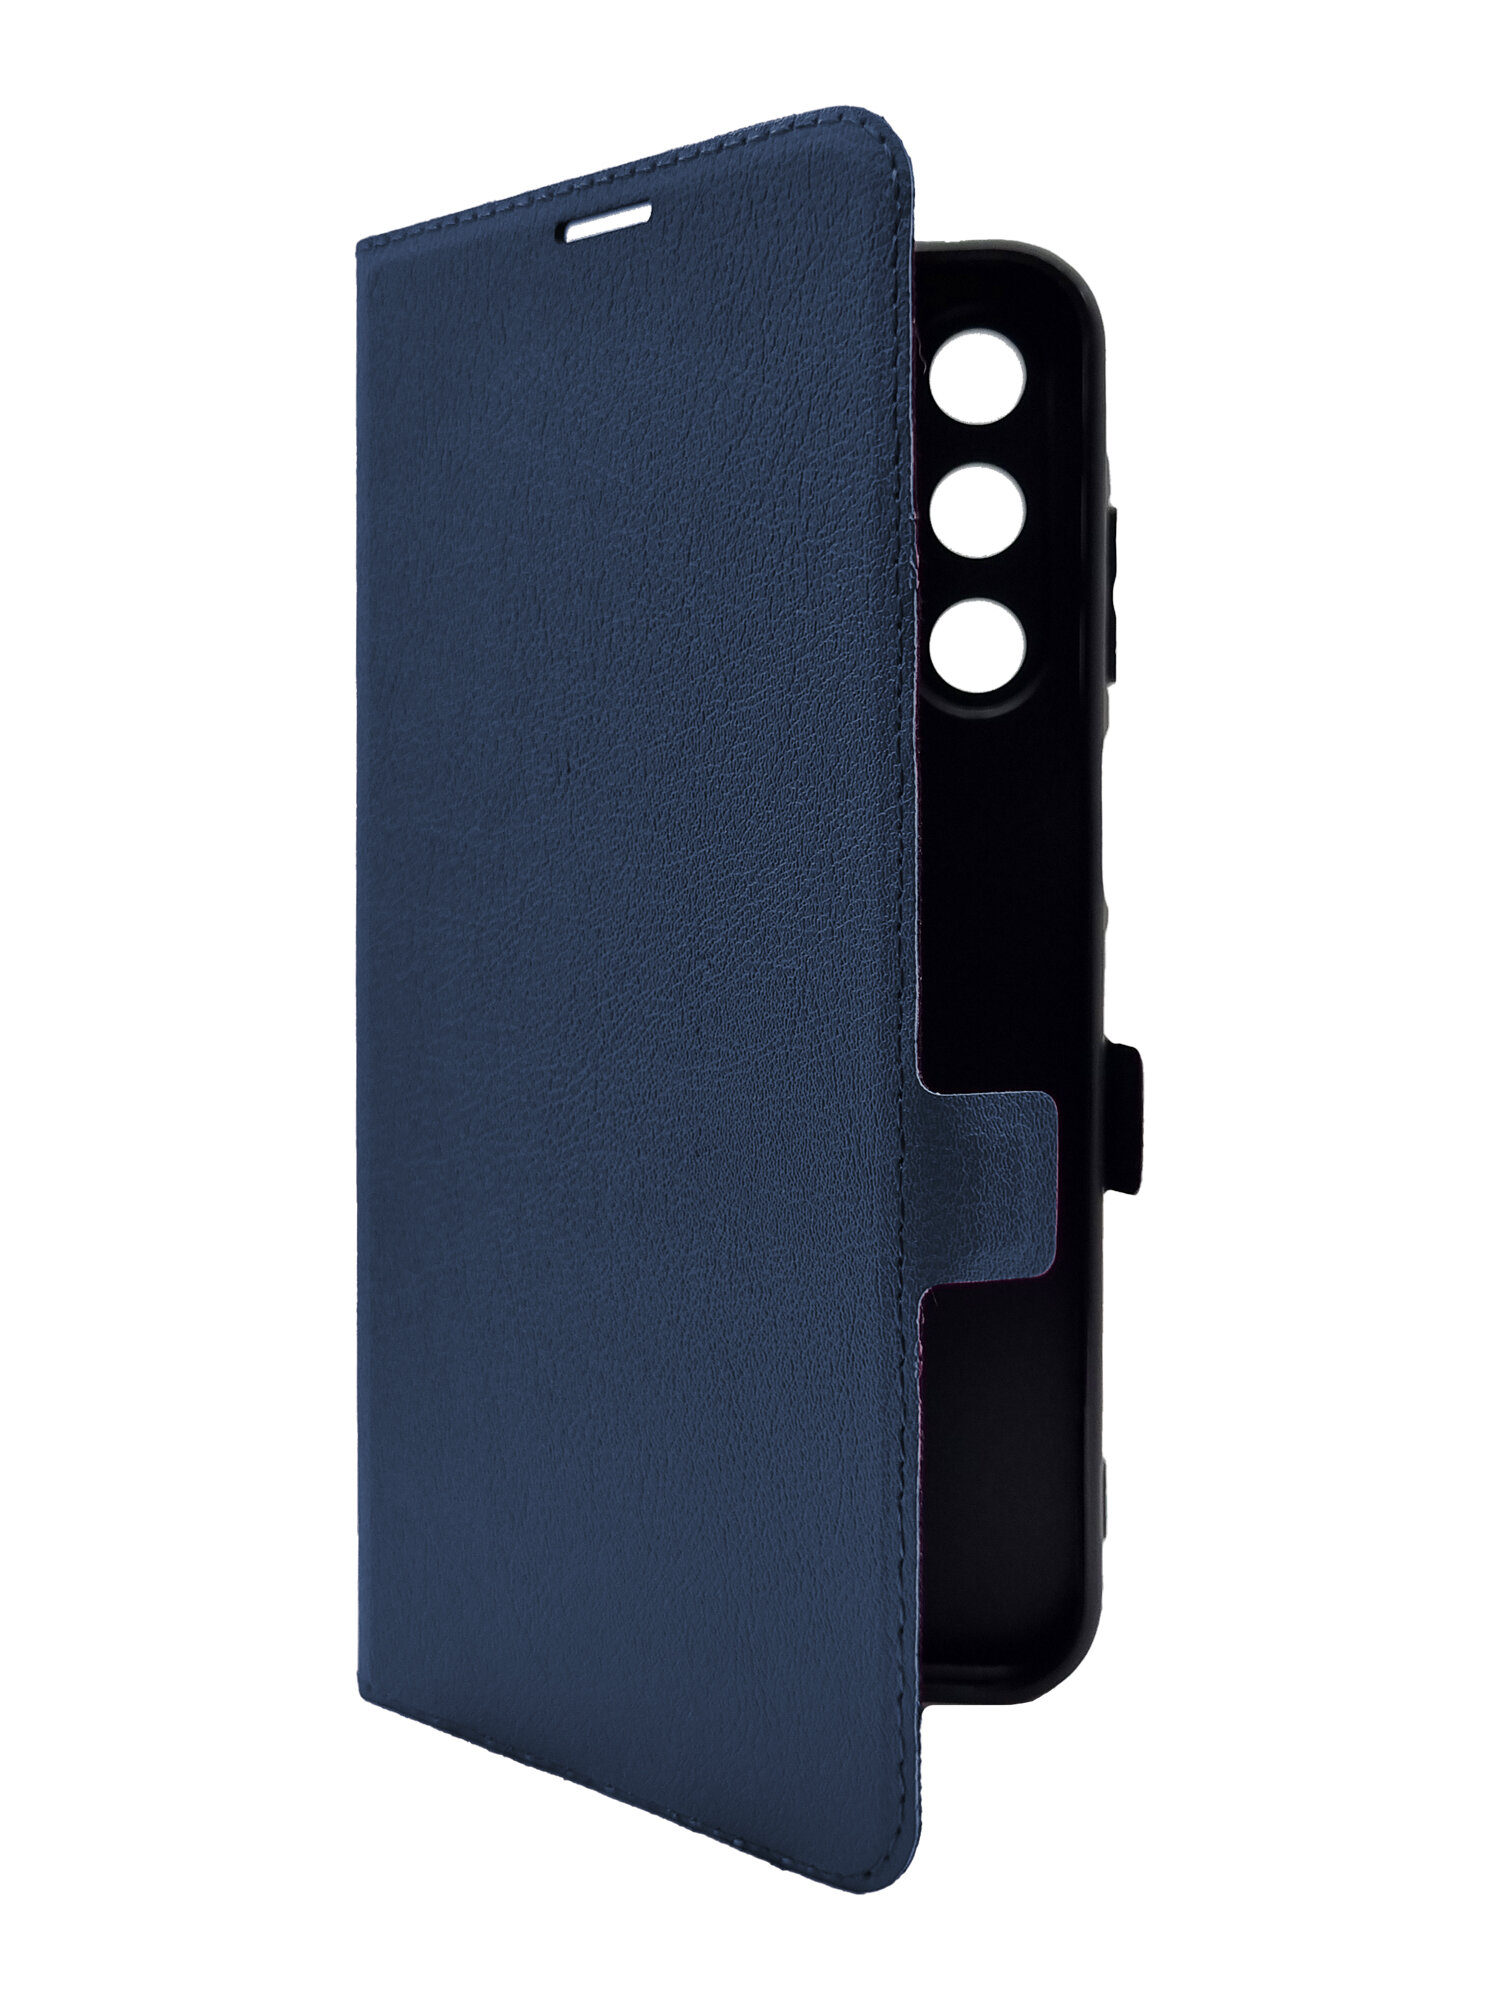 Чехол на Samsung Galaxy A25 (Самсунг Галакси А25) синий книжка эко-кожа с функцией подставки отделением для карт и магнитами Book case, Miuko